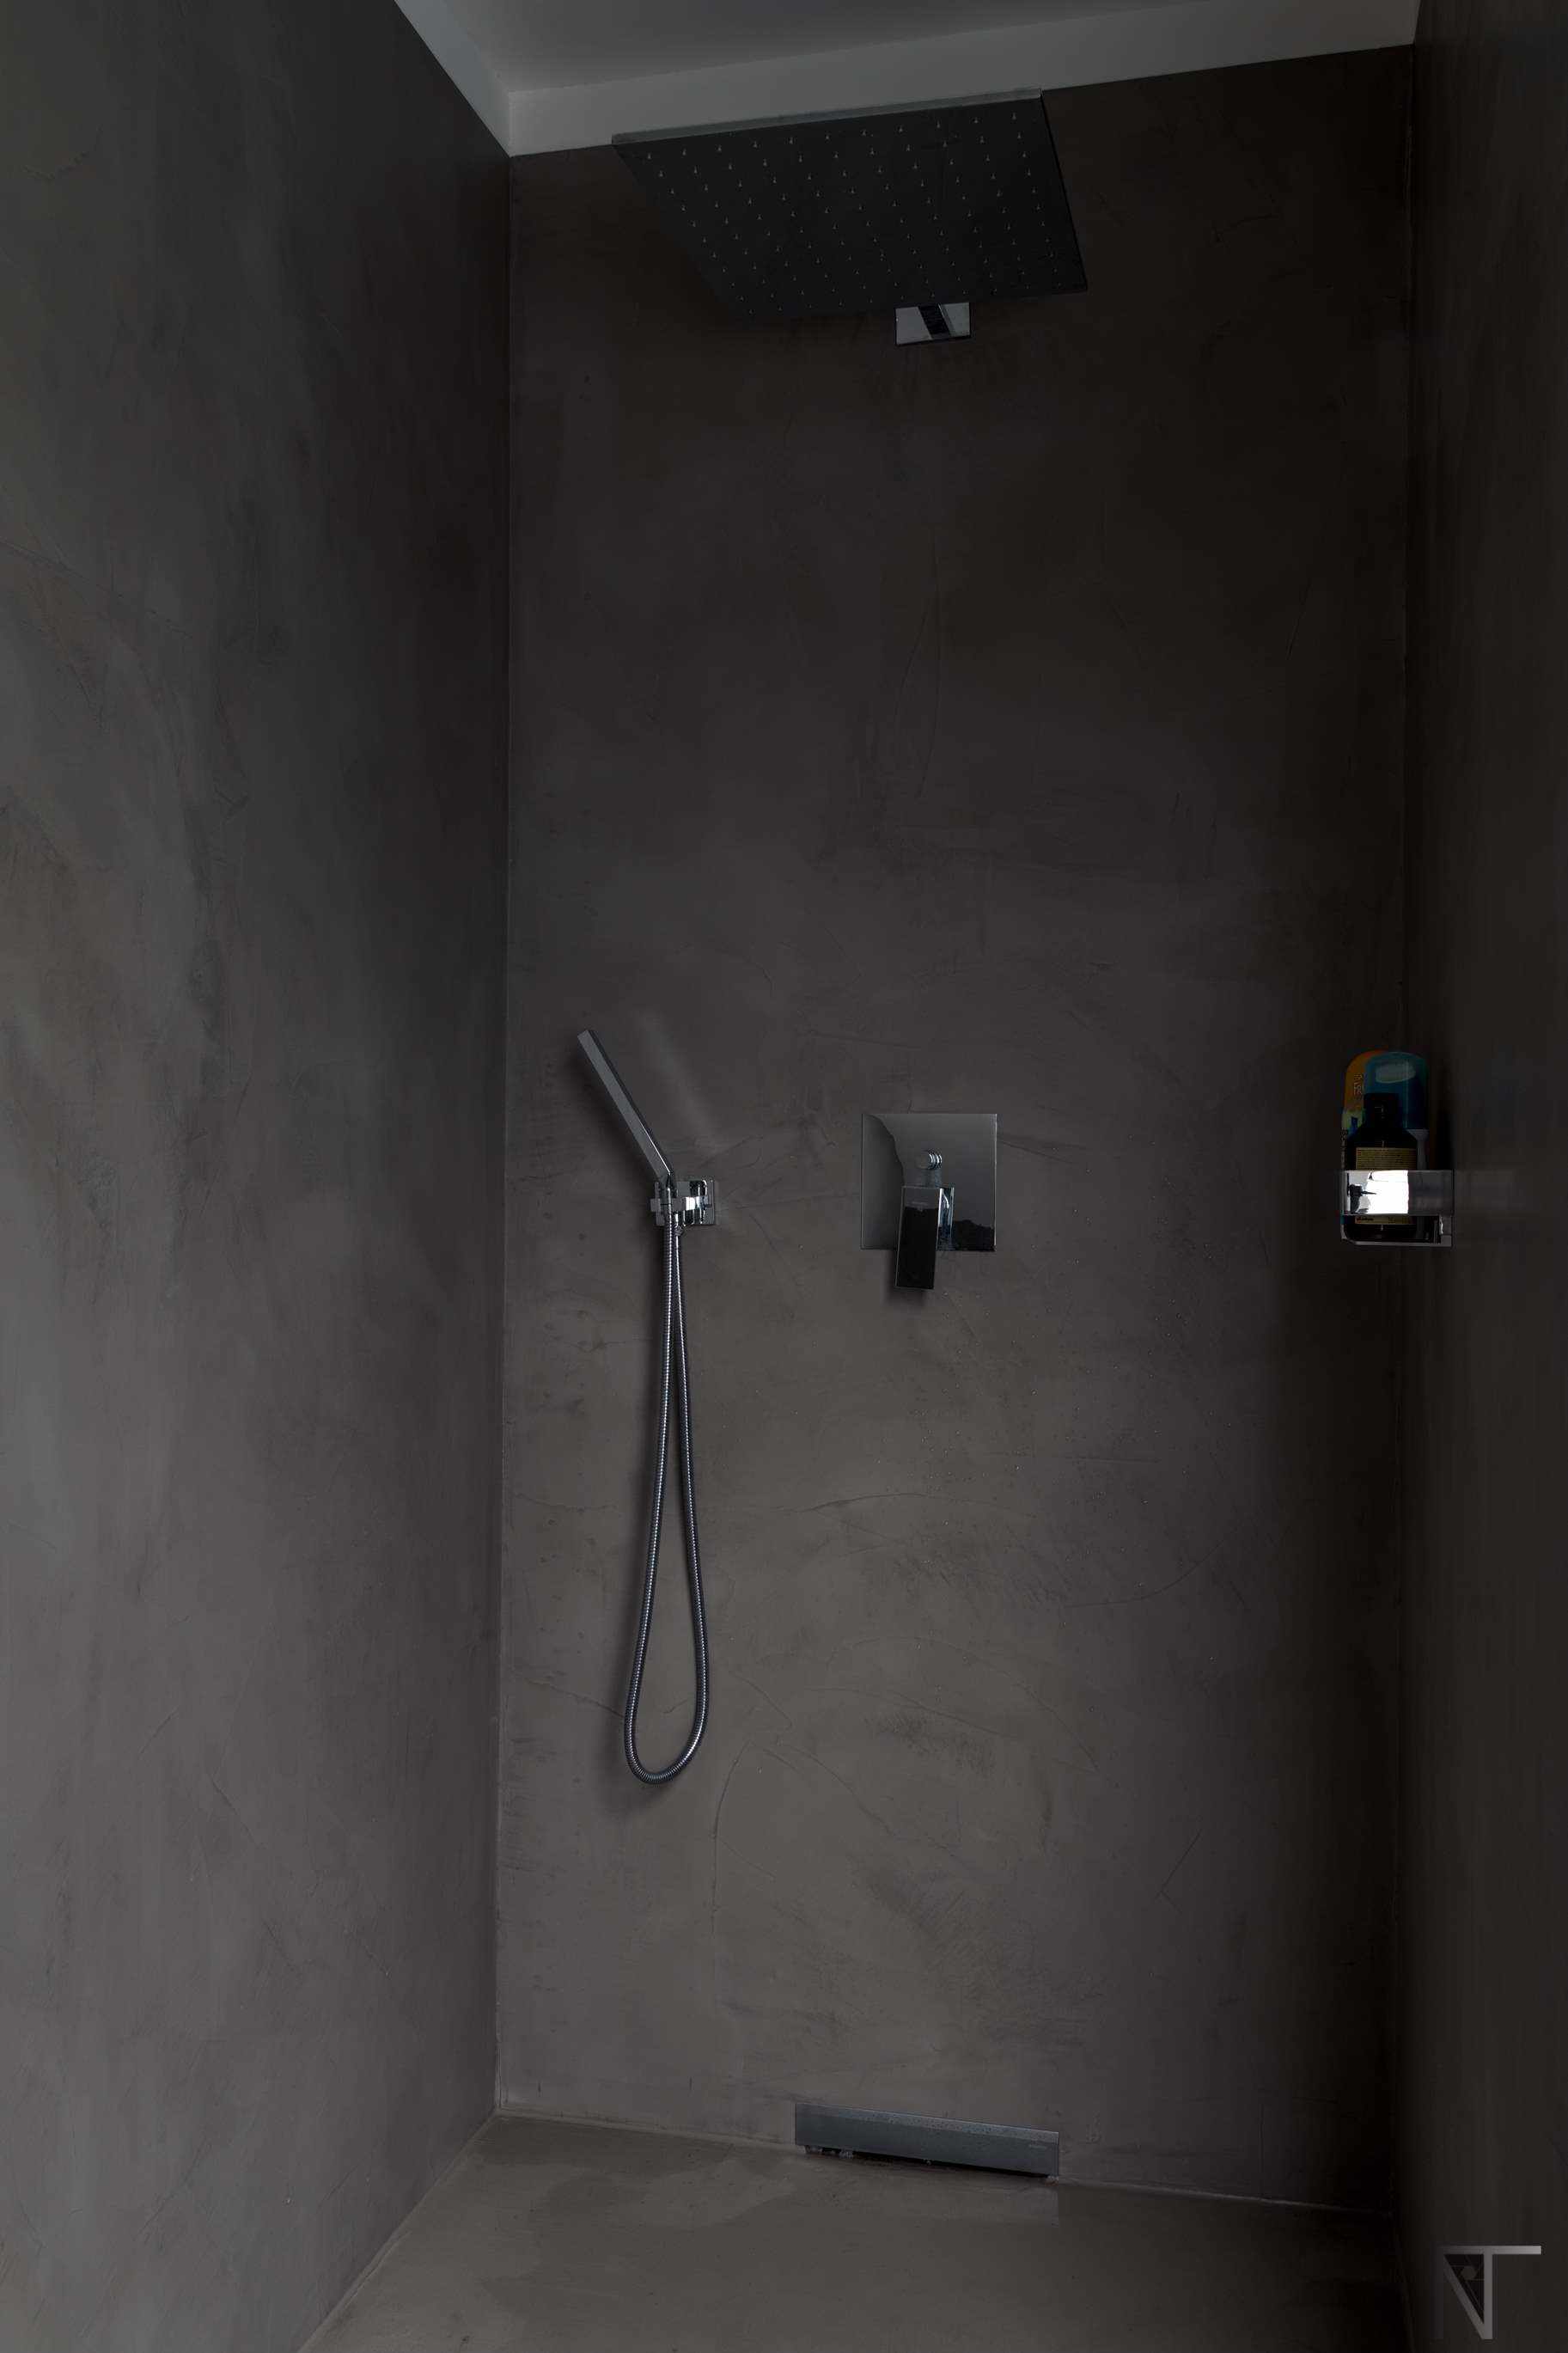 Baño de azulejos reformado con microcemento en la ducha